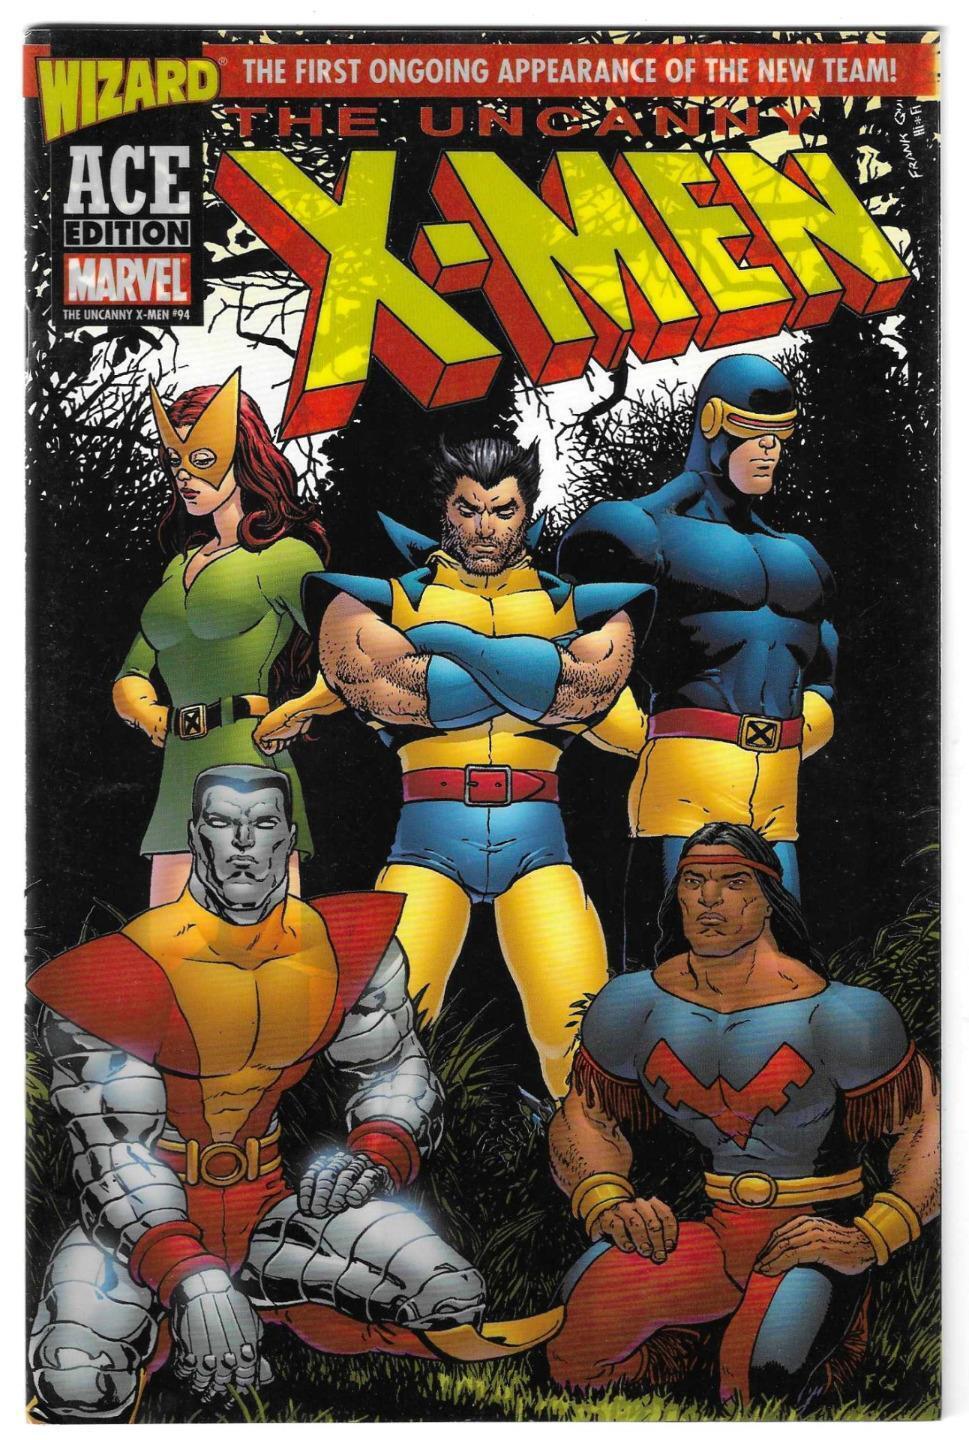 Wizard Ace Edition - Uncanny X-Men #94, June 2002